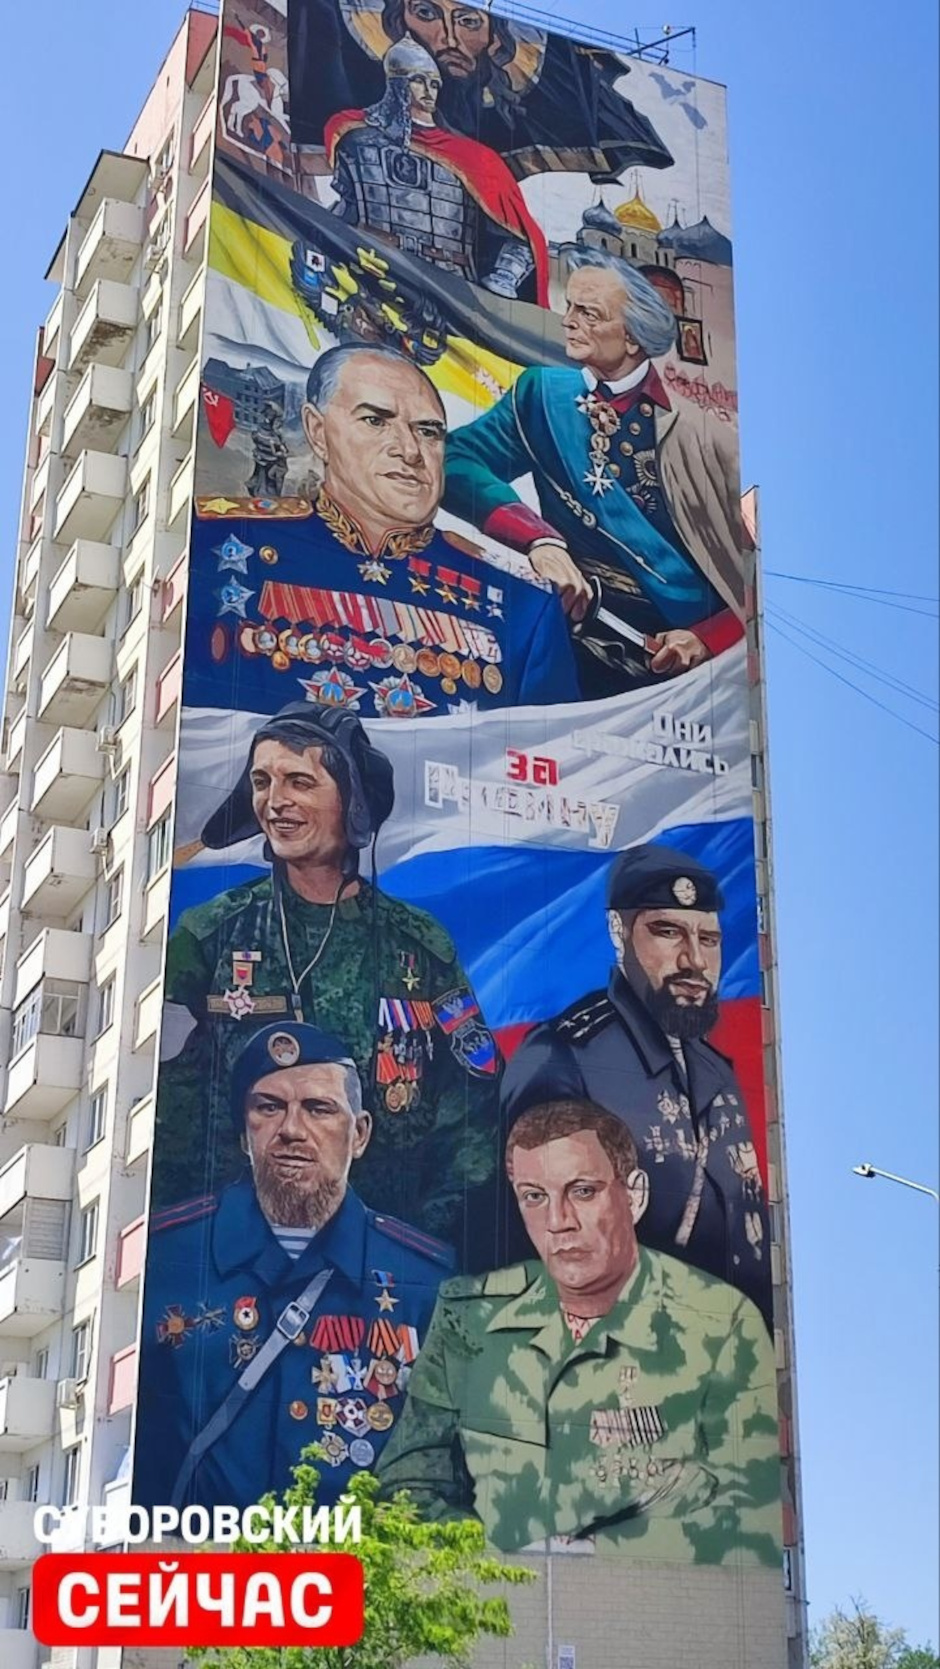 Первый патриотический марал в в ЖК Суворовский!